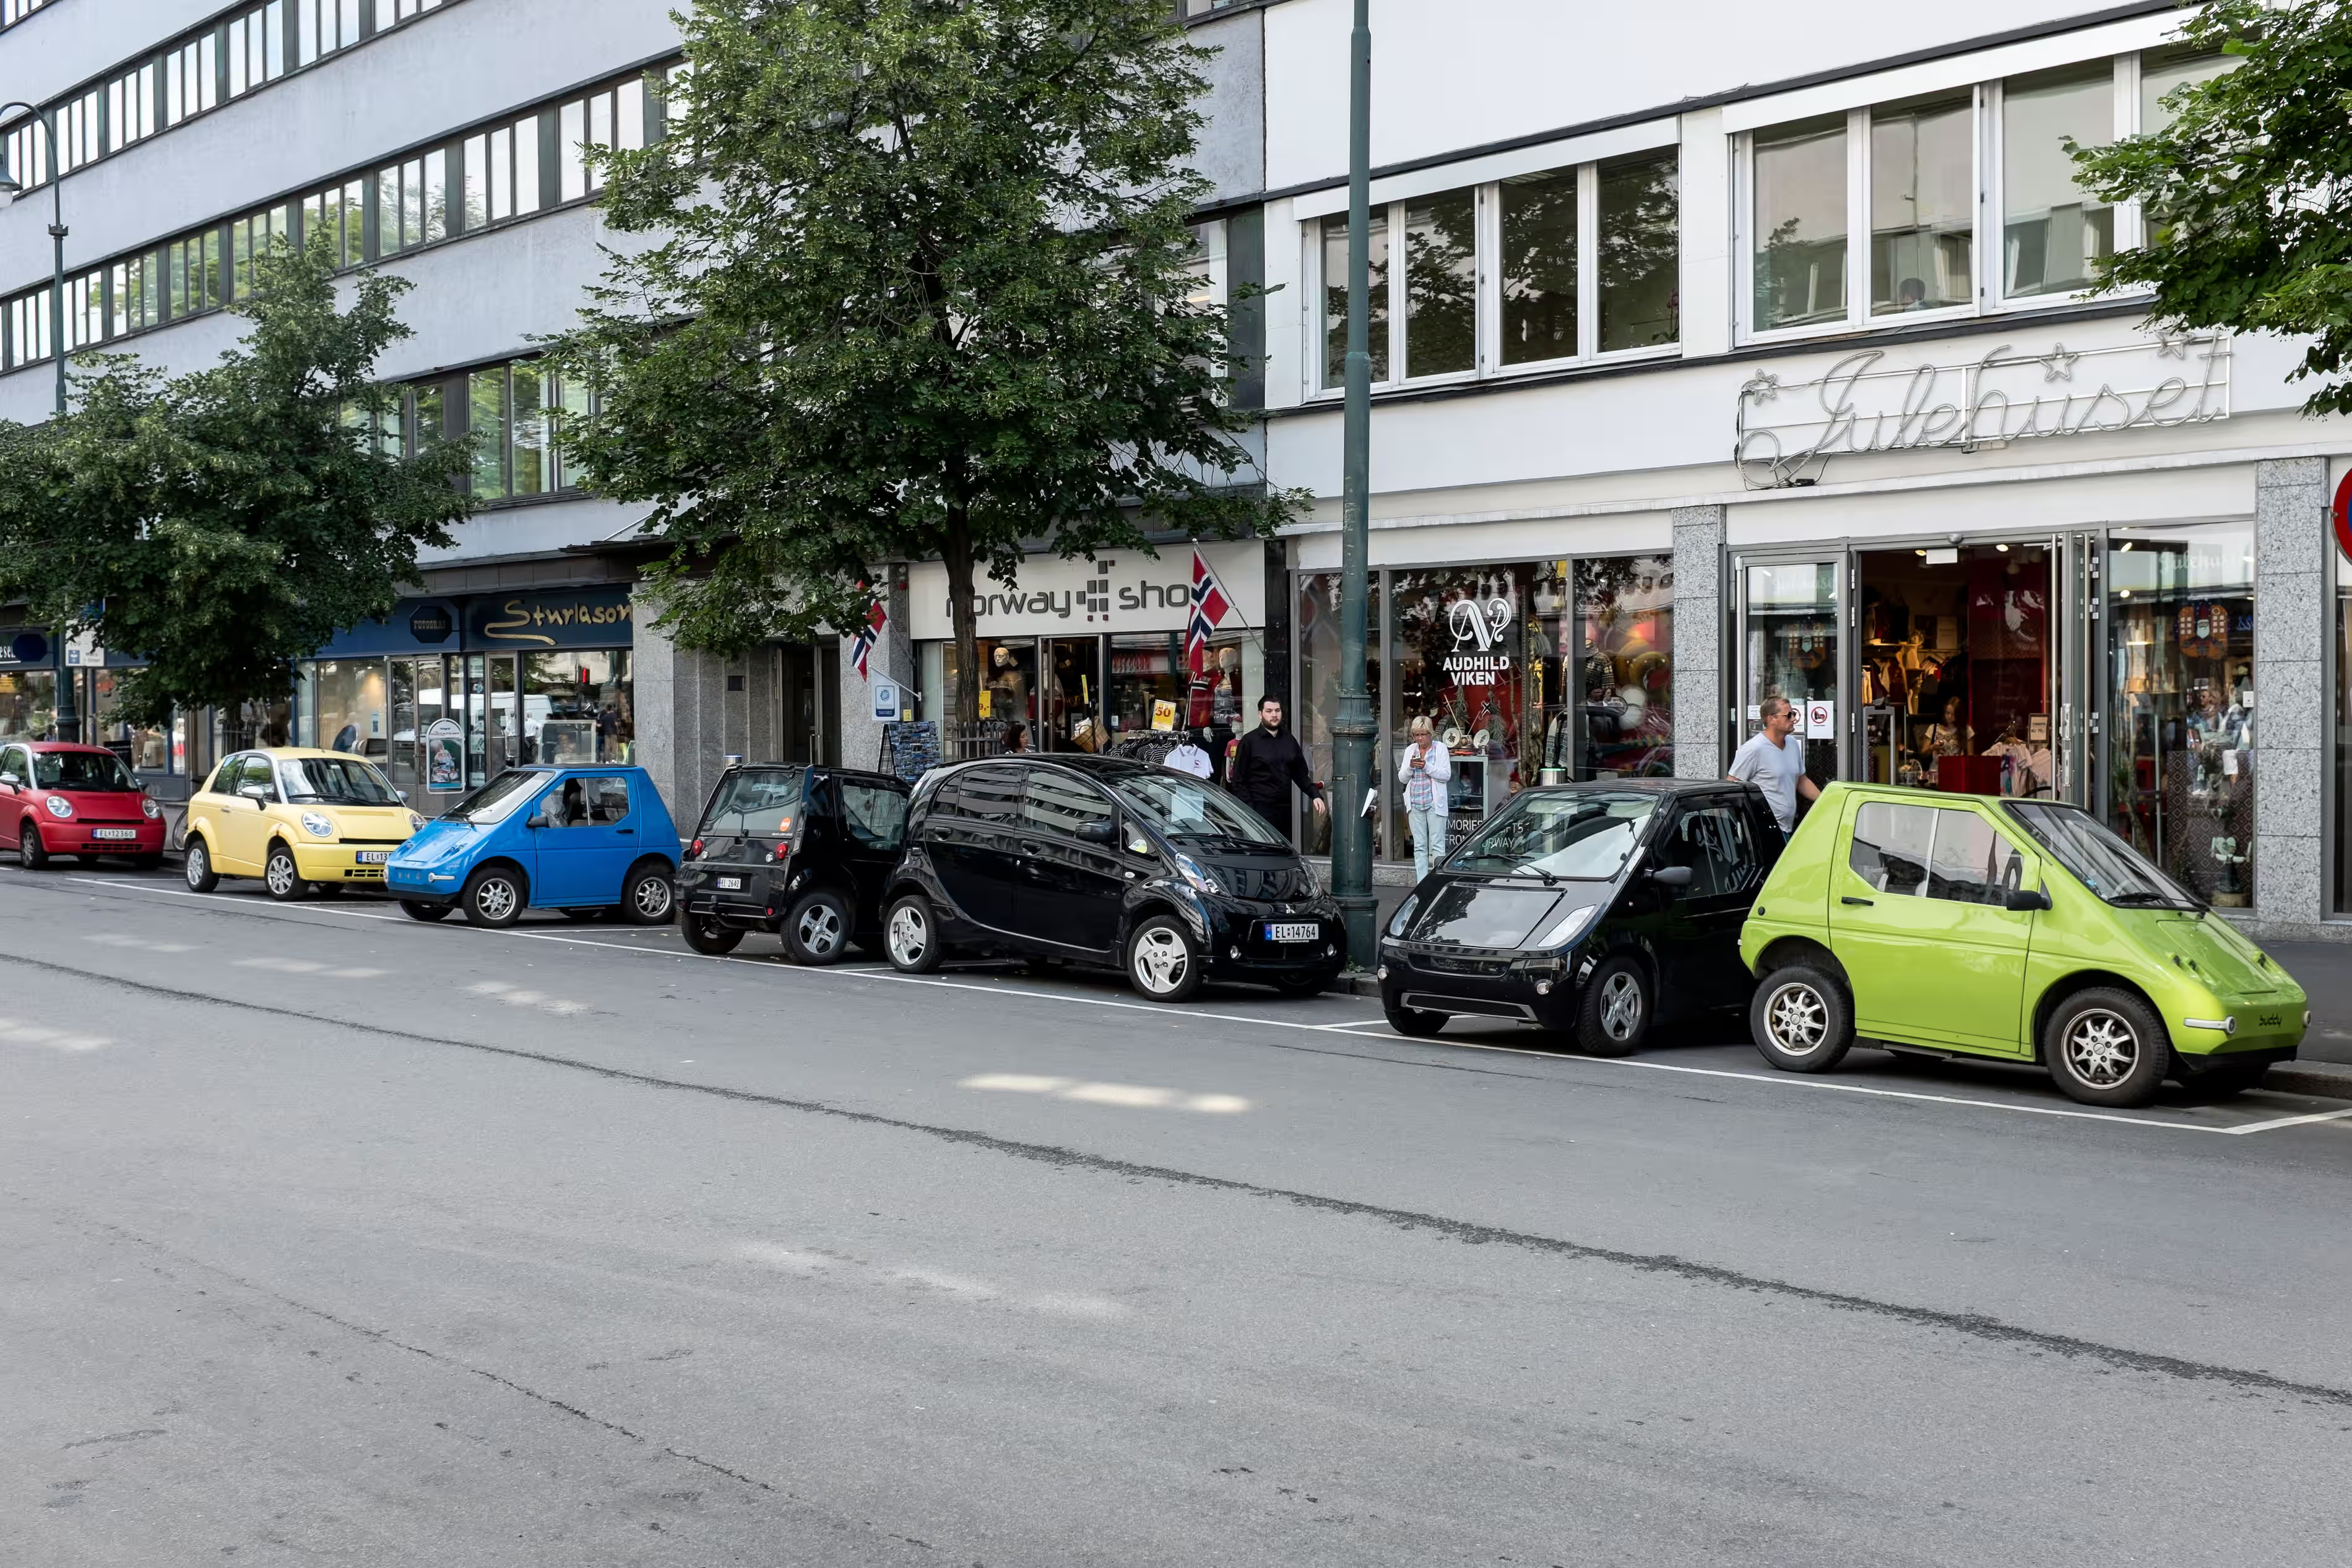 Електромобілі в Осло. Фото: Thomas Russ Arnestad/Alamy